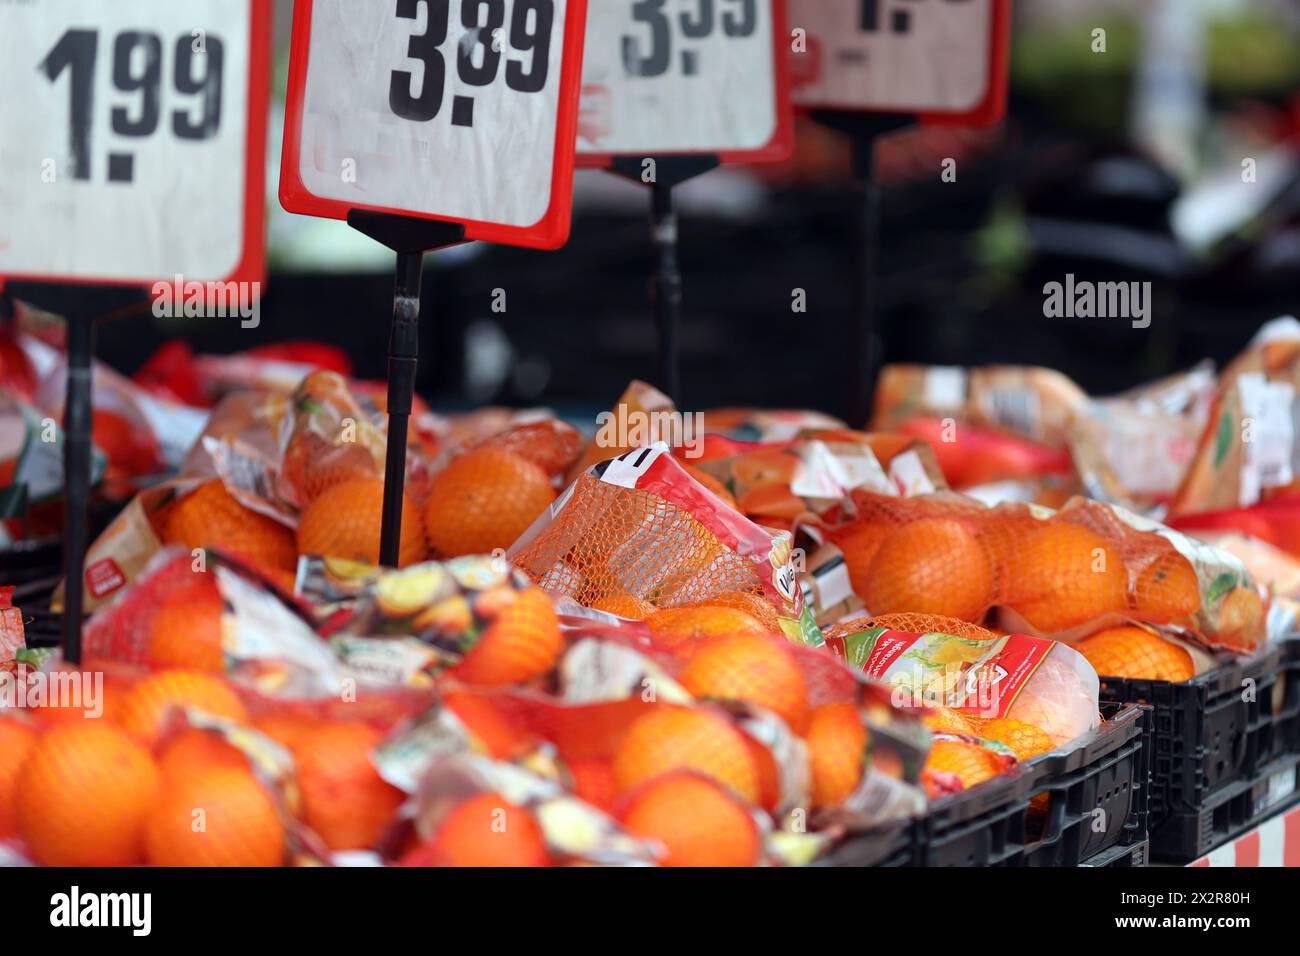 Obst als gesundes Nahrungsmittel Orangen liegen nach langen Transportwegen in Netzen zum Verkauf bereit. *** Obst als gesunde Nahrung Orangen sind nach langen Transportwegen in Netzen zum Verkauf bereit Stockfoto